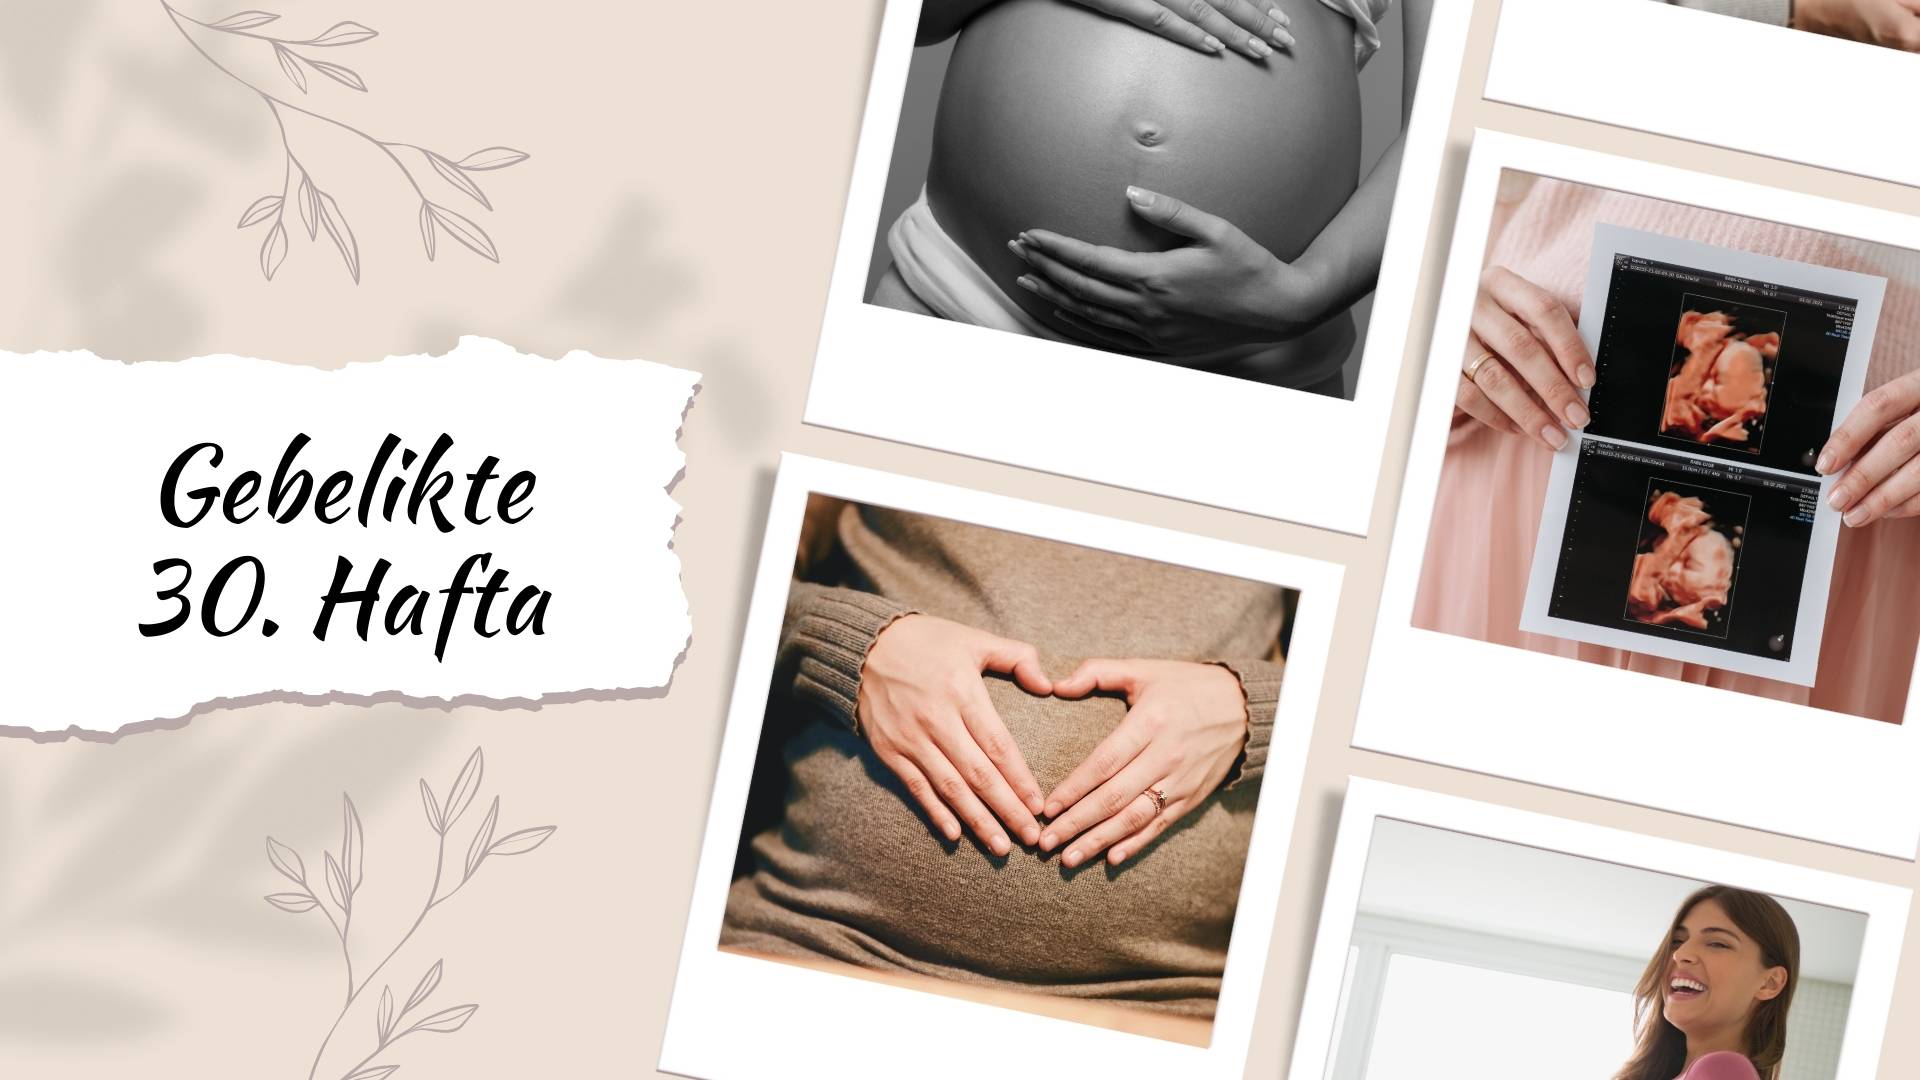 Hamilelikte 30. hafta gebelikte bebeğin ve annenin yaşadığı değişimleri ve sağlık önerilerini keşfedin. Ayrıca rahatsızlıklar ve hazırlıklar hakkında bilgi edinin.